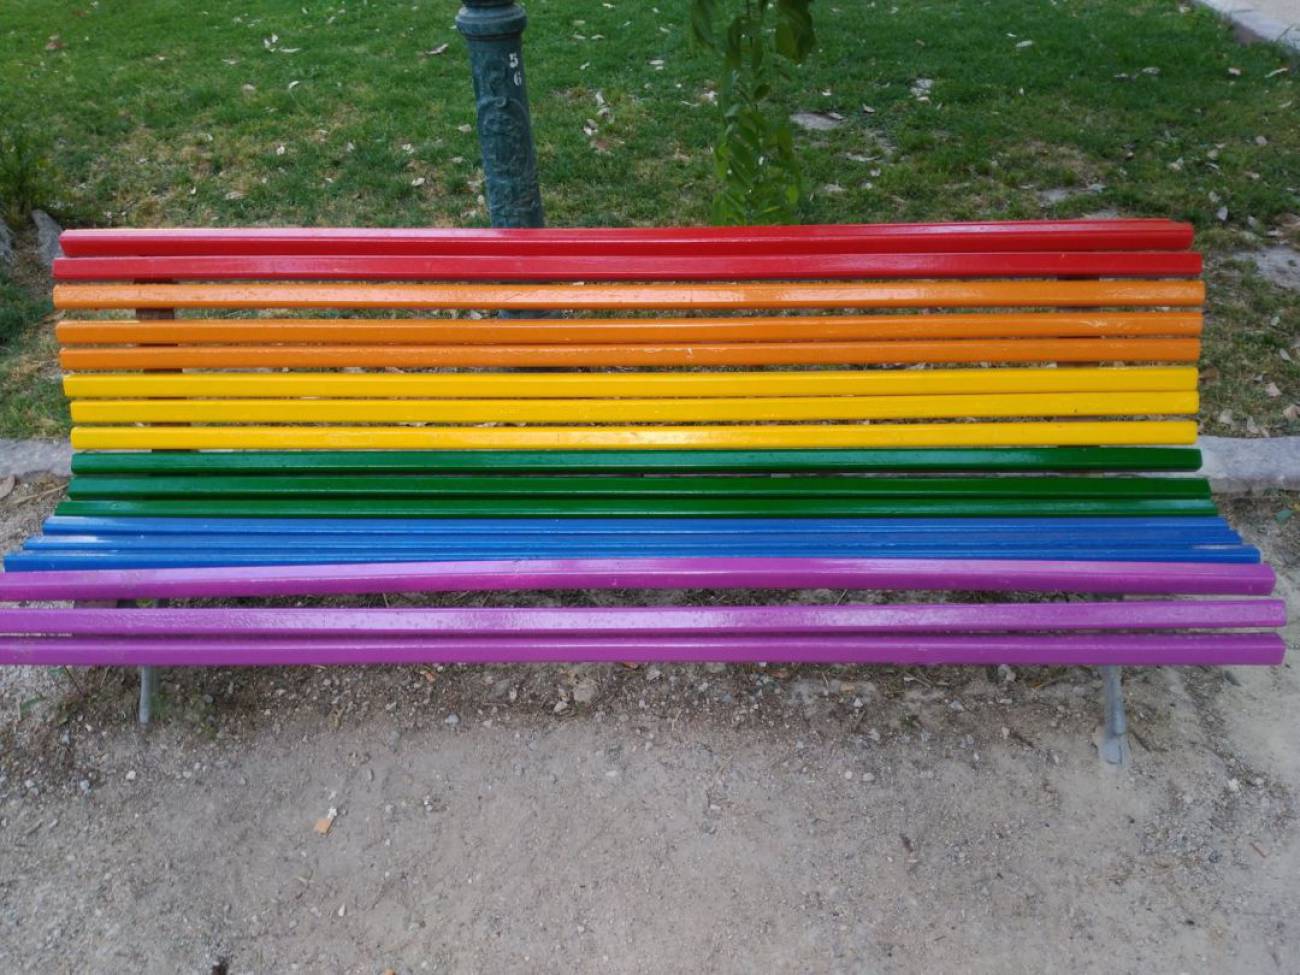 Valencia pinta sus bancos con la bandera del arcoíris